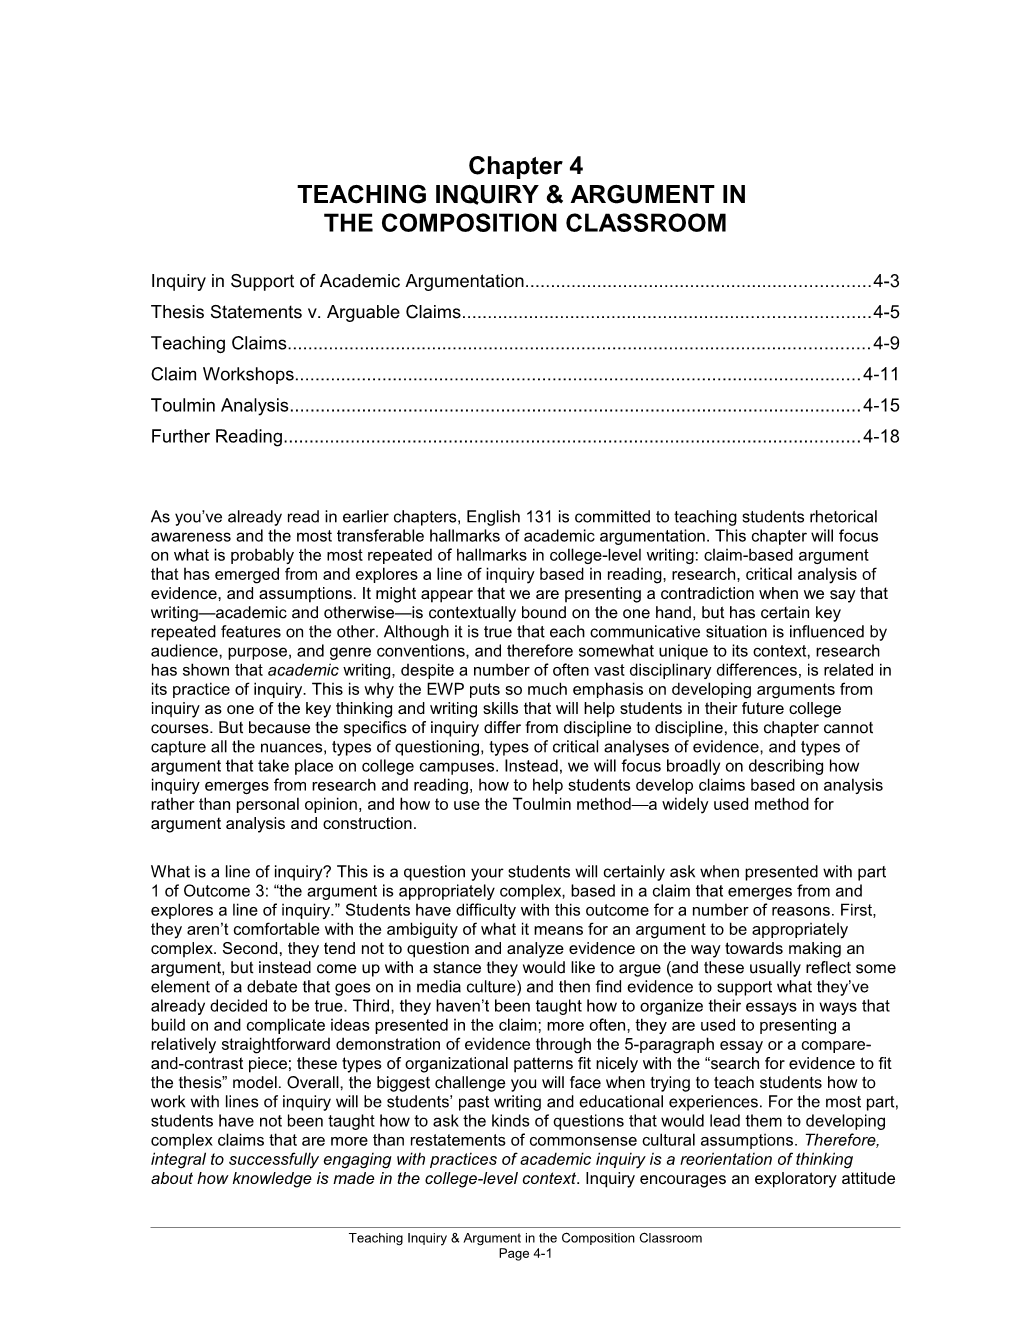 Teaching Inquiry & Argument In